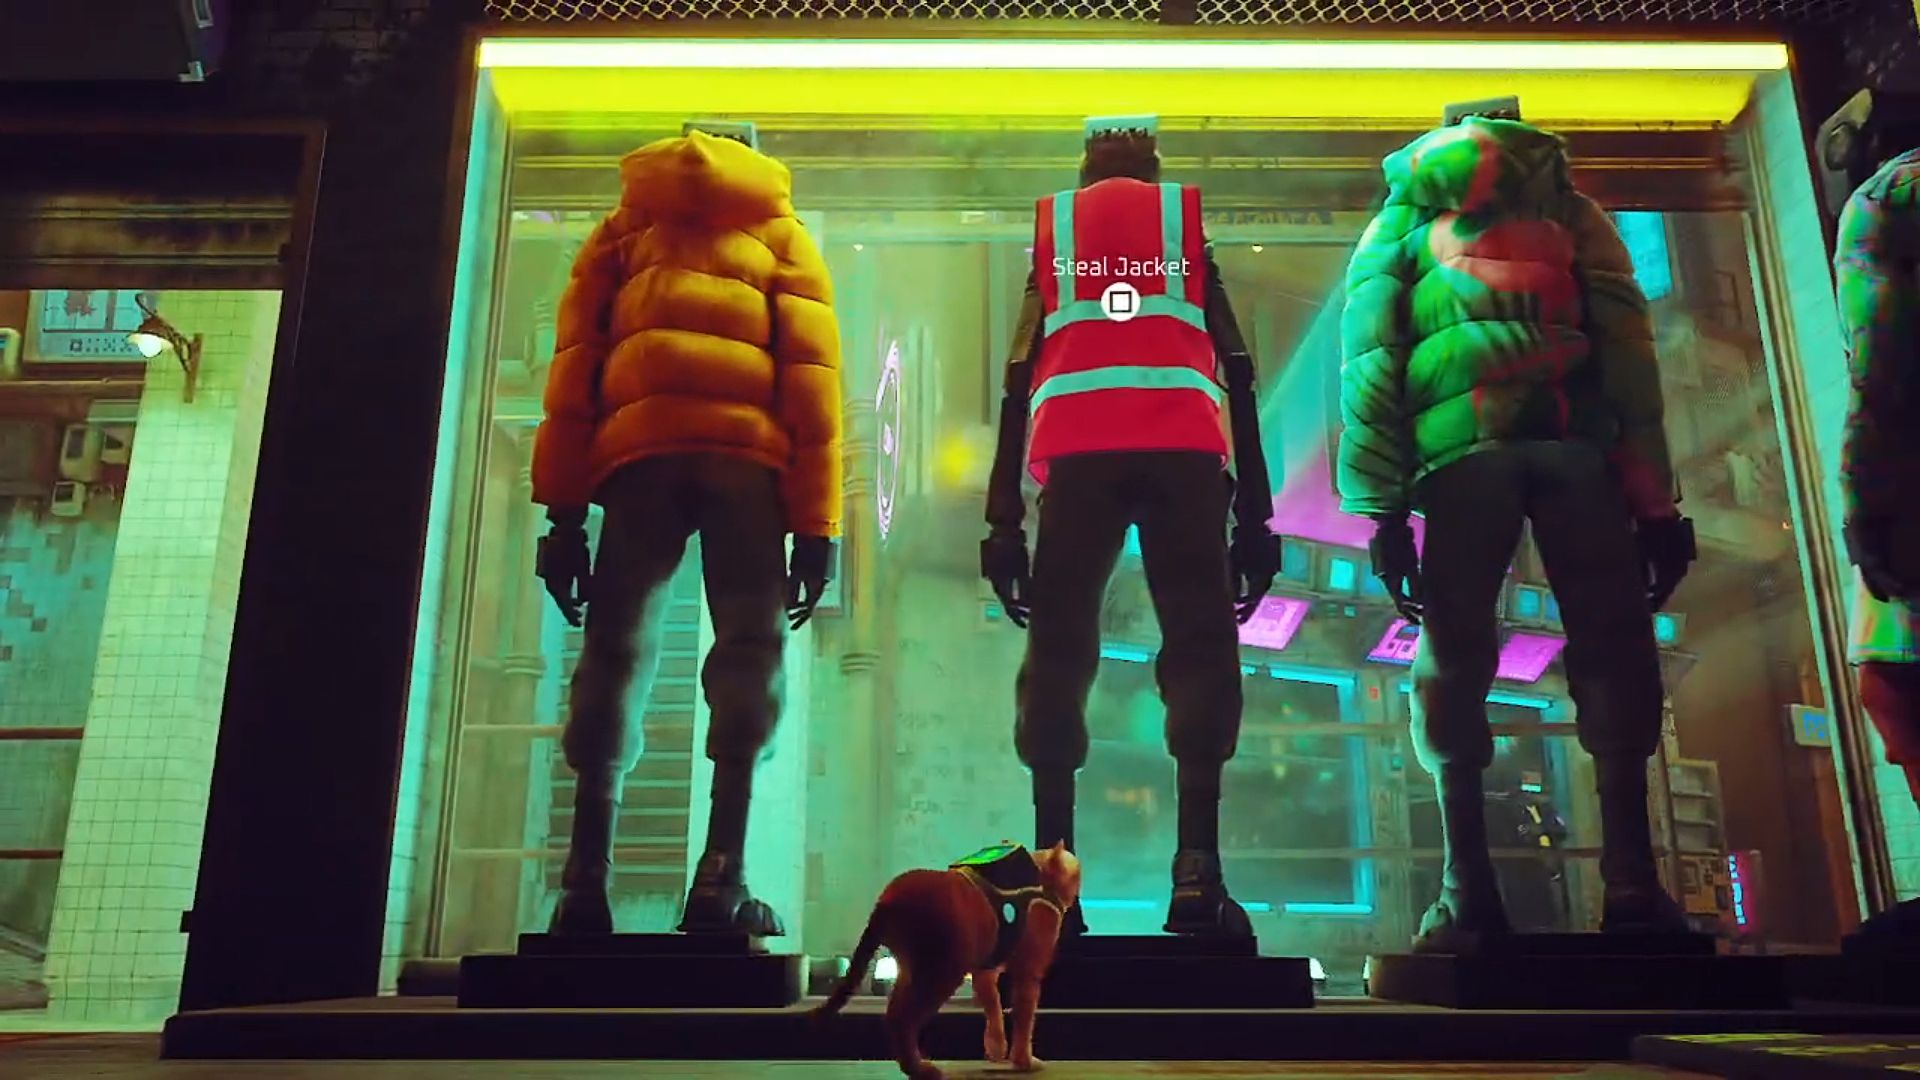 Kurtka robotnicza zbłąkana: trzy manekiny w oknie odzieży w centrum miasta, z których dwa noszą puffer kurtki na żółto i zielone, podczas gdy środkowy manekin nosi czerwoną kurtkę robotniczą Hi-Viz